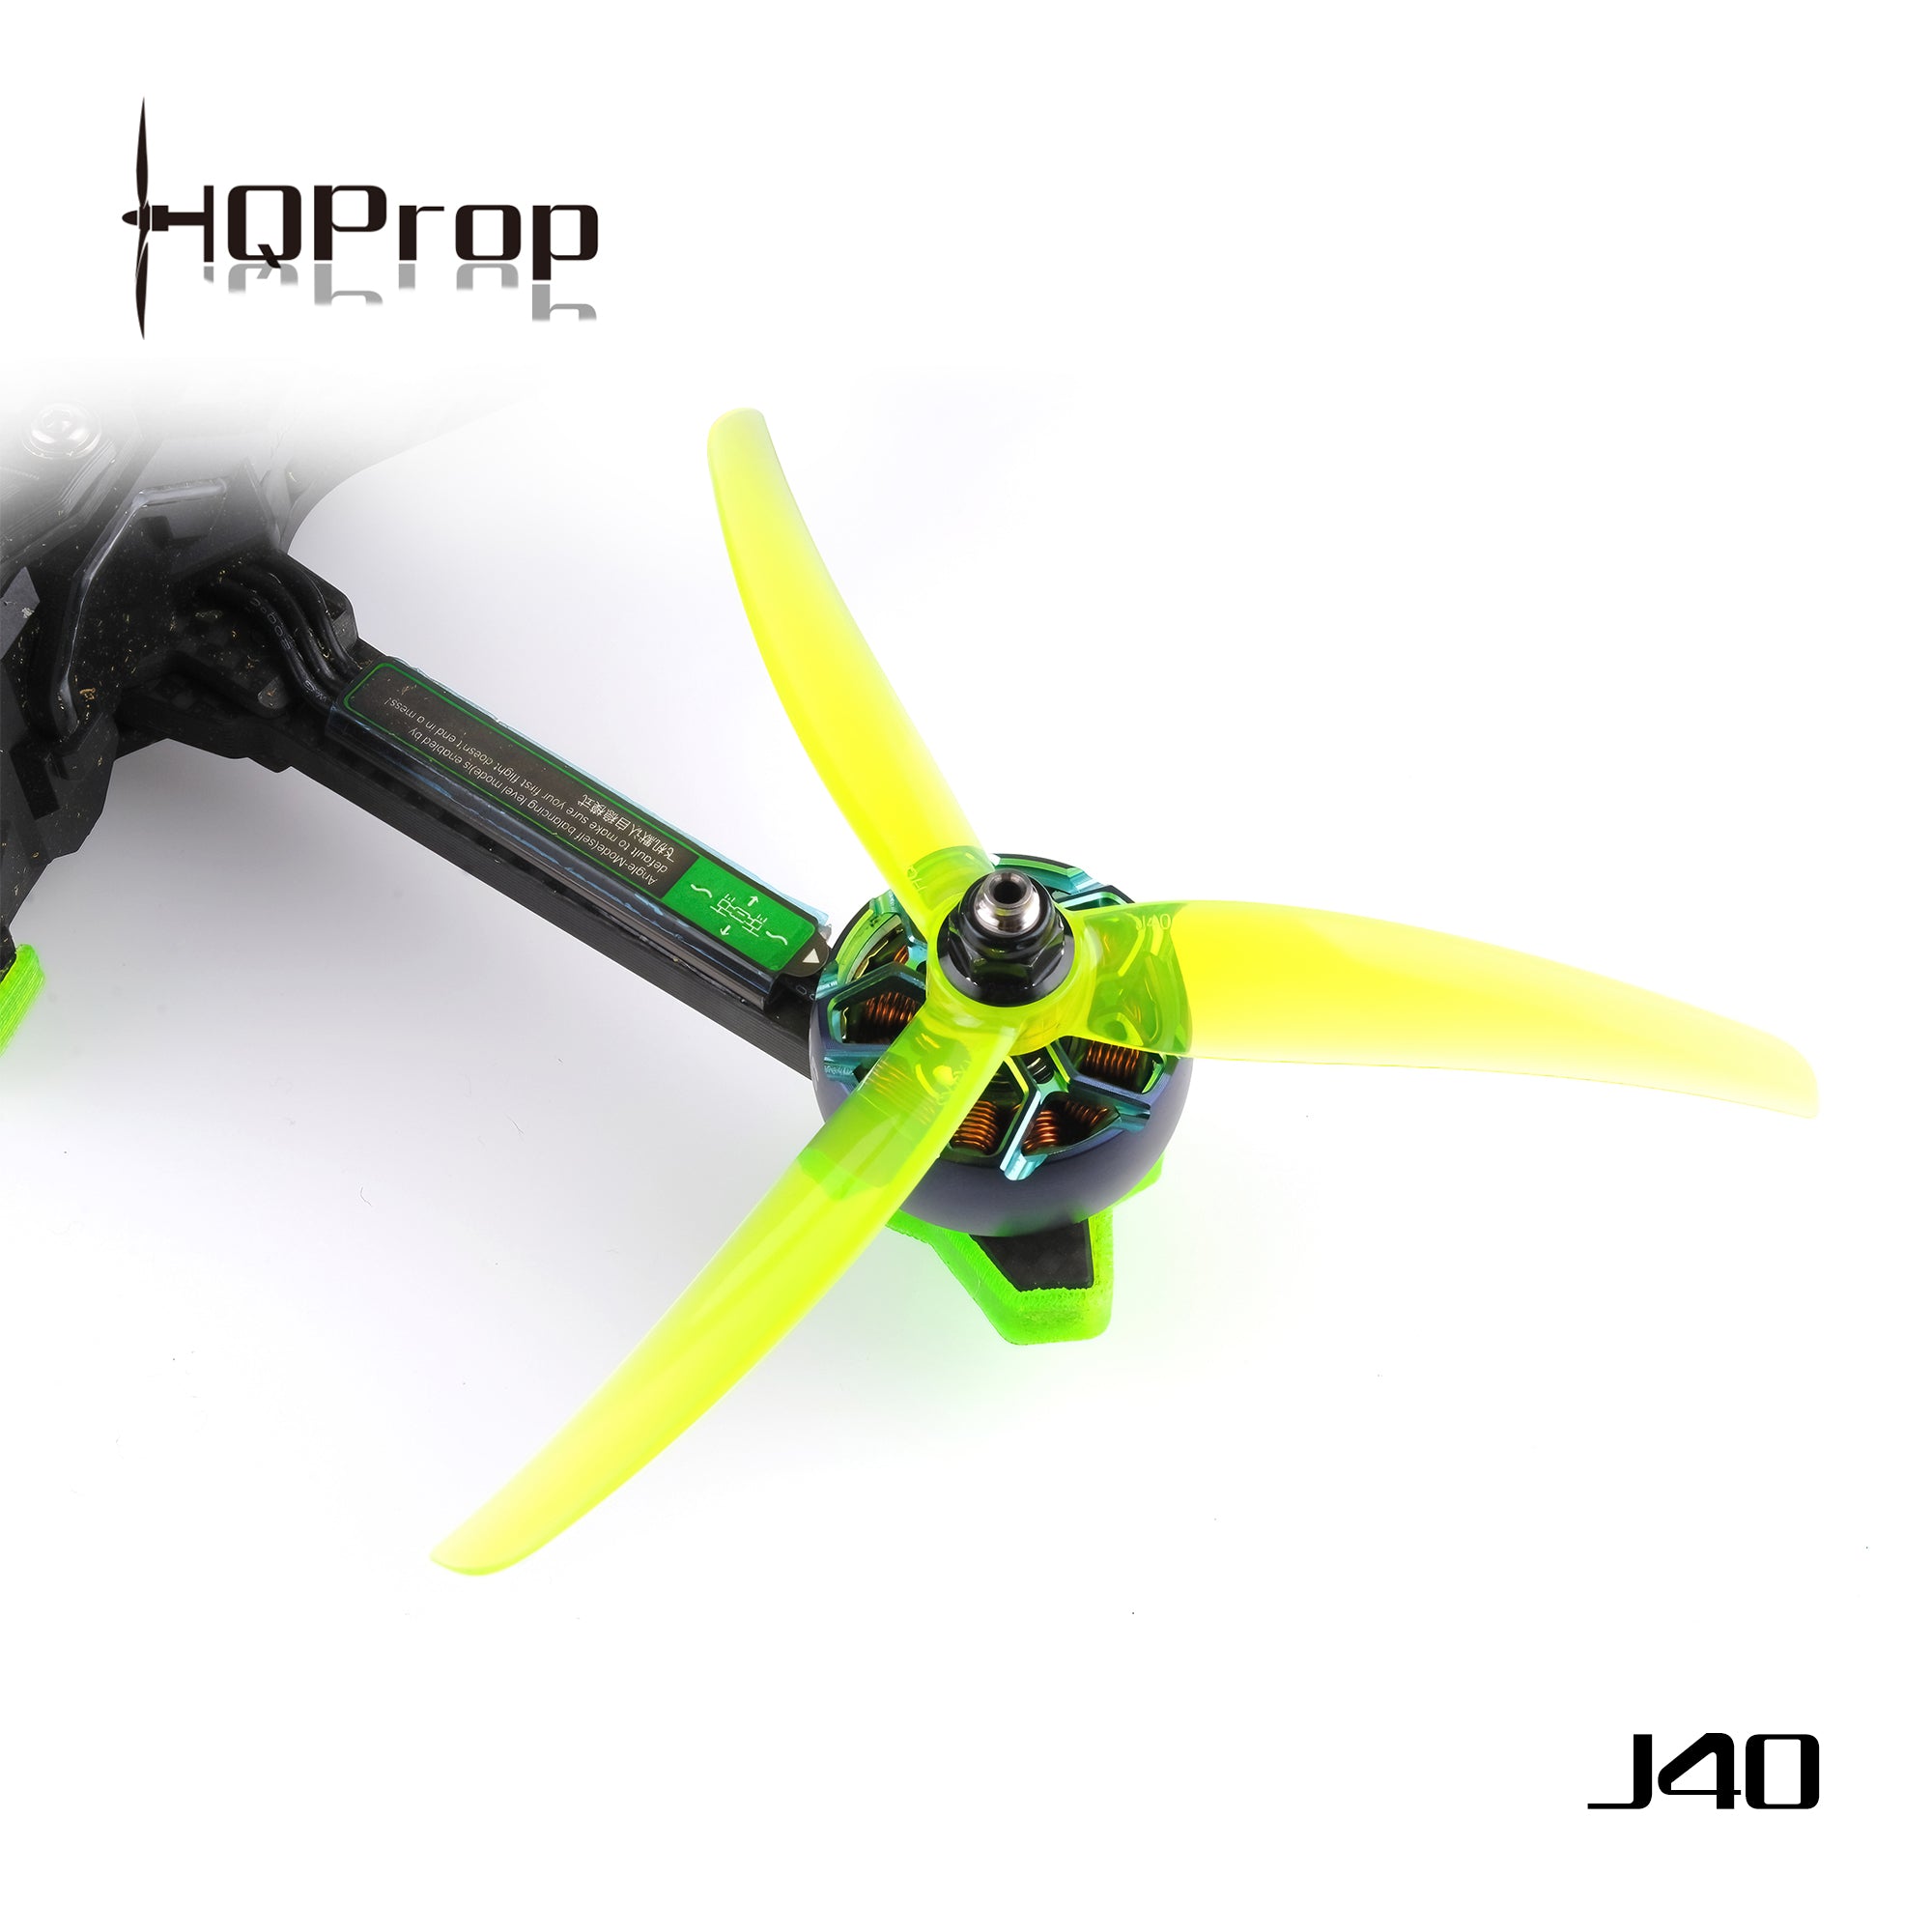 HQProp J40 5.1X4X3 Juicy Propellers (2CW+2CCW)